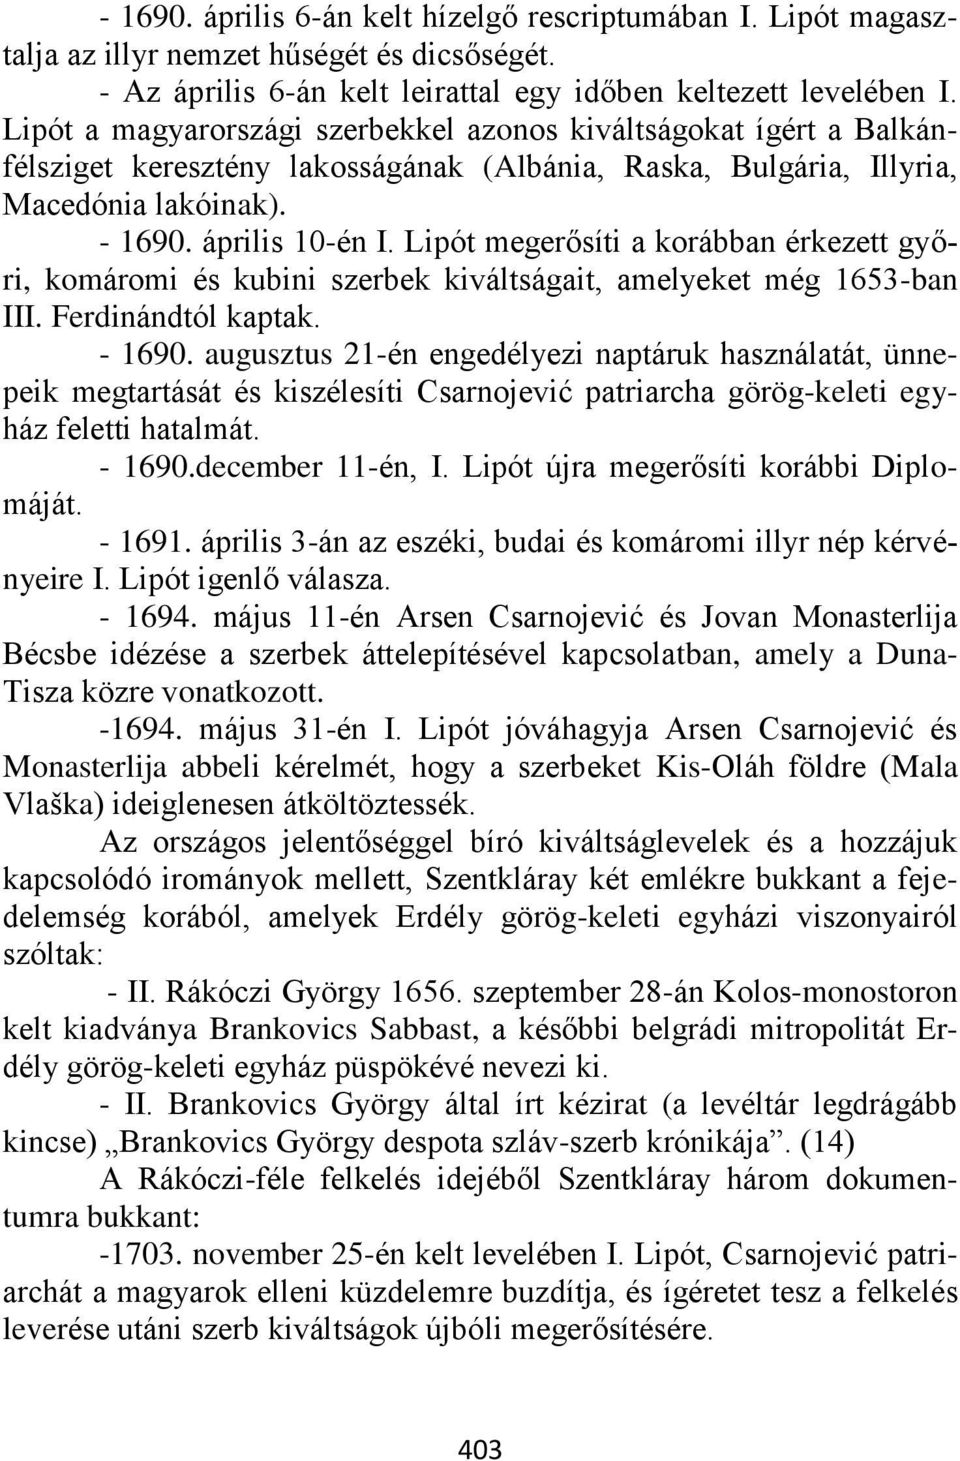 Lipót megerősíti a korábban érkezett győri, komáromi és kubini szerbek kiváltságait, amelyeket még 1653-ban III. Ferdinándtól kaptak. - 1690.